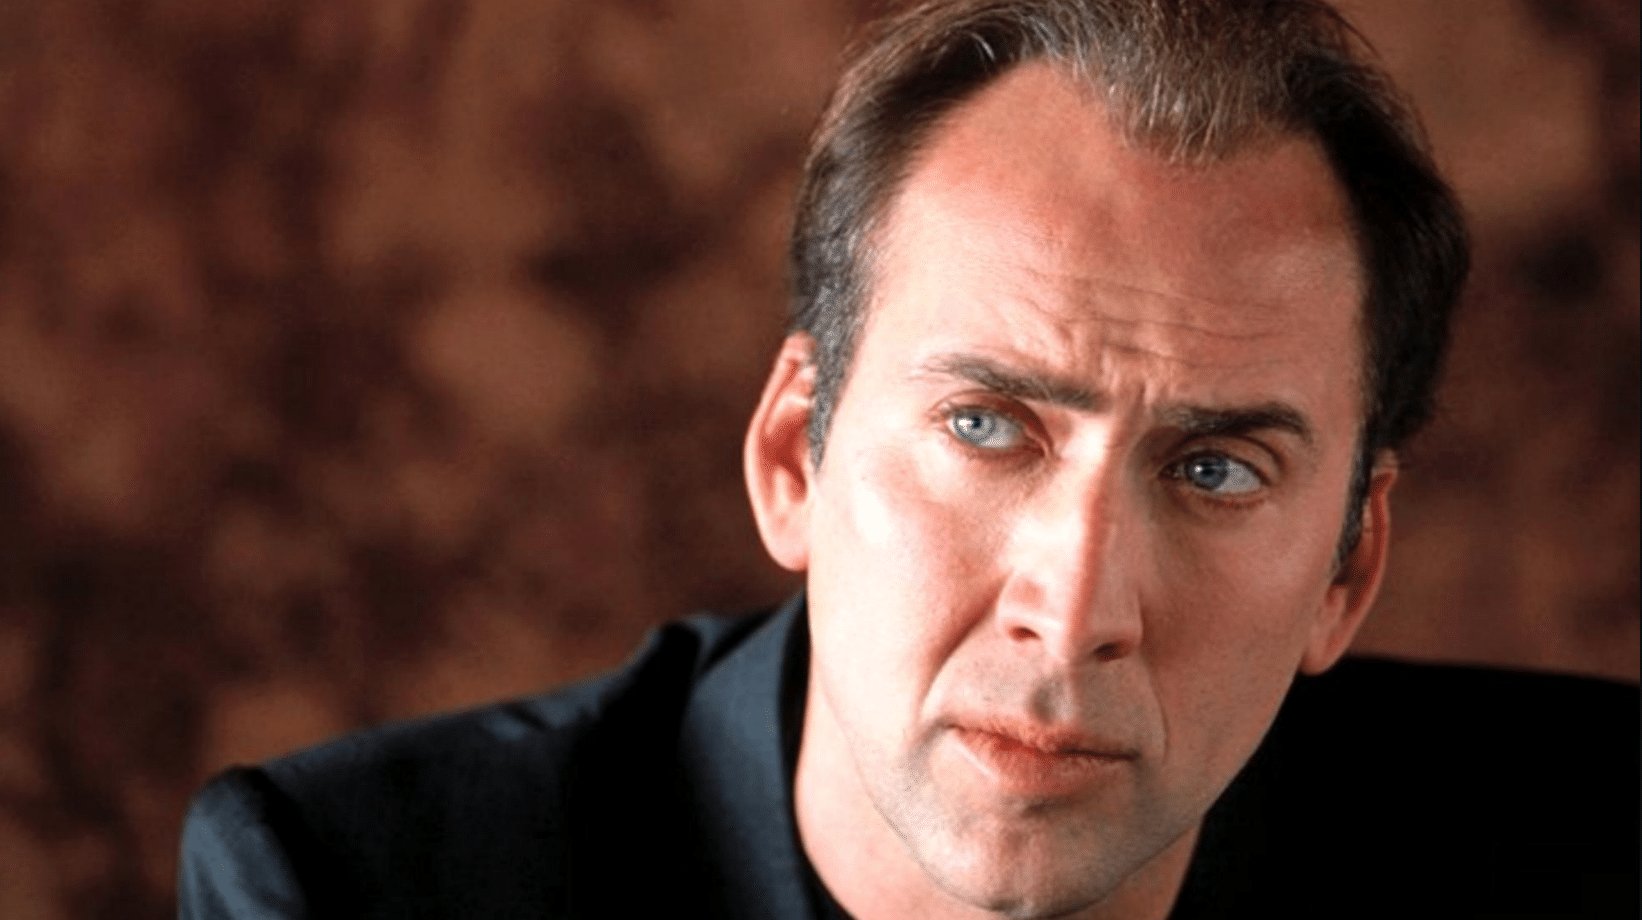 - Nicolas Cage - Nicolas Cage pede anulação de casamento 4 dias após cerimônia